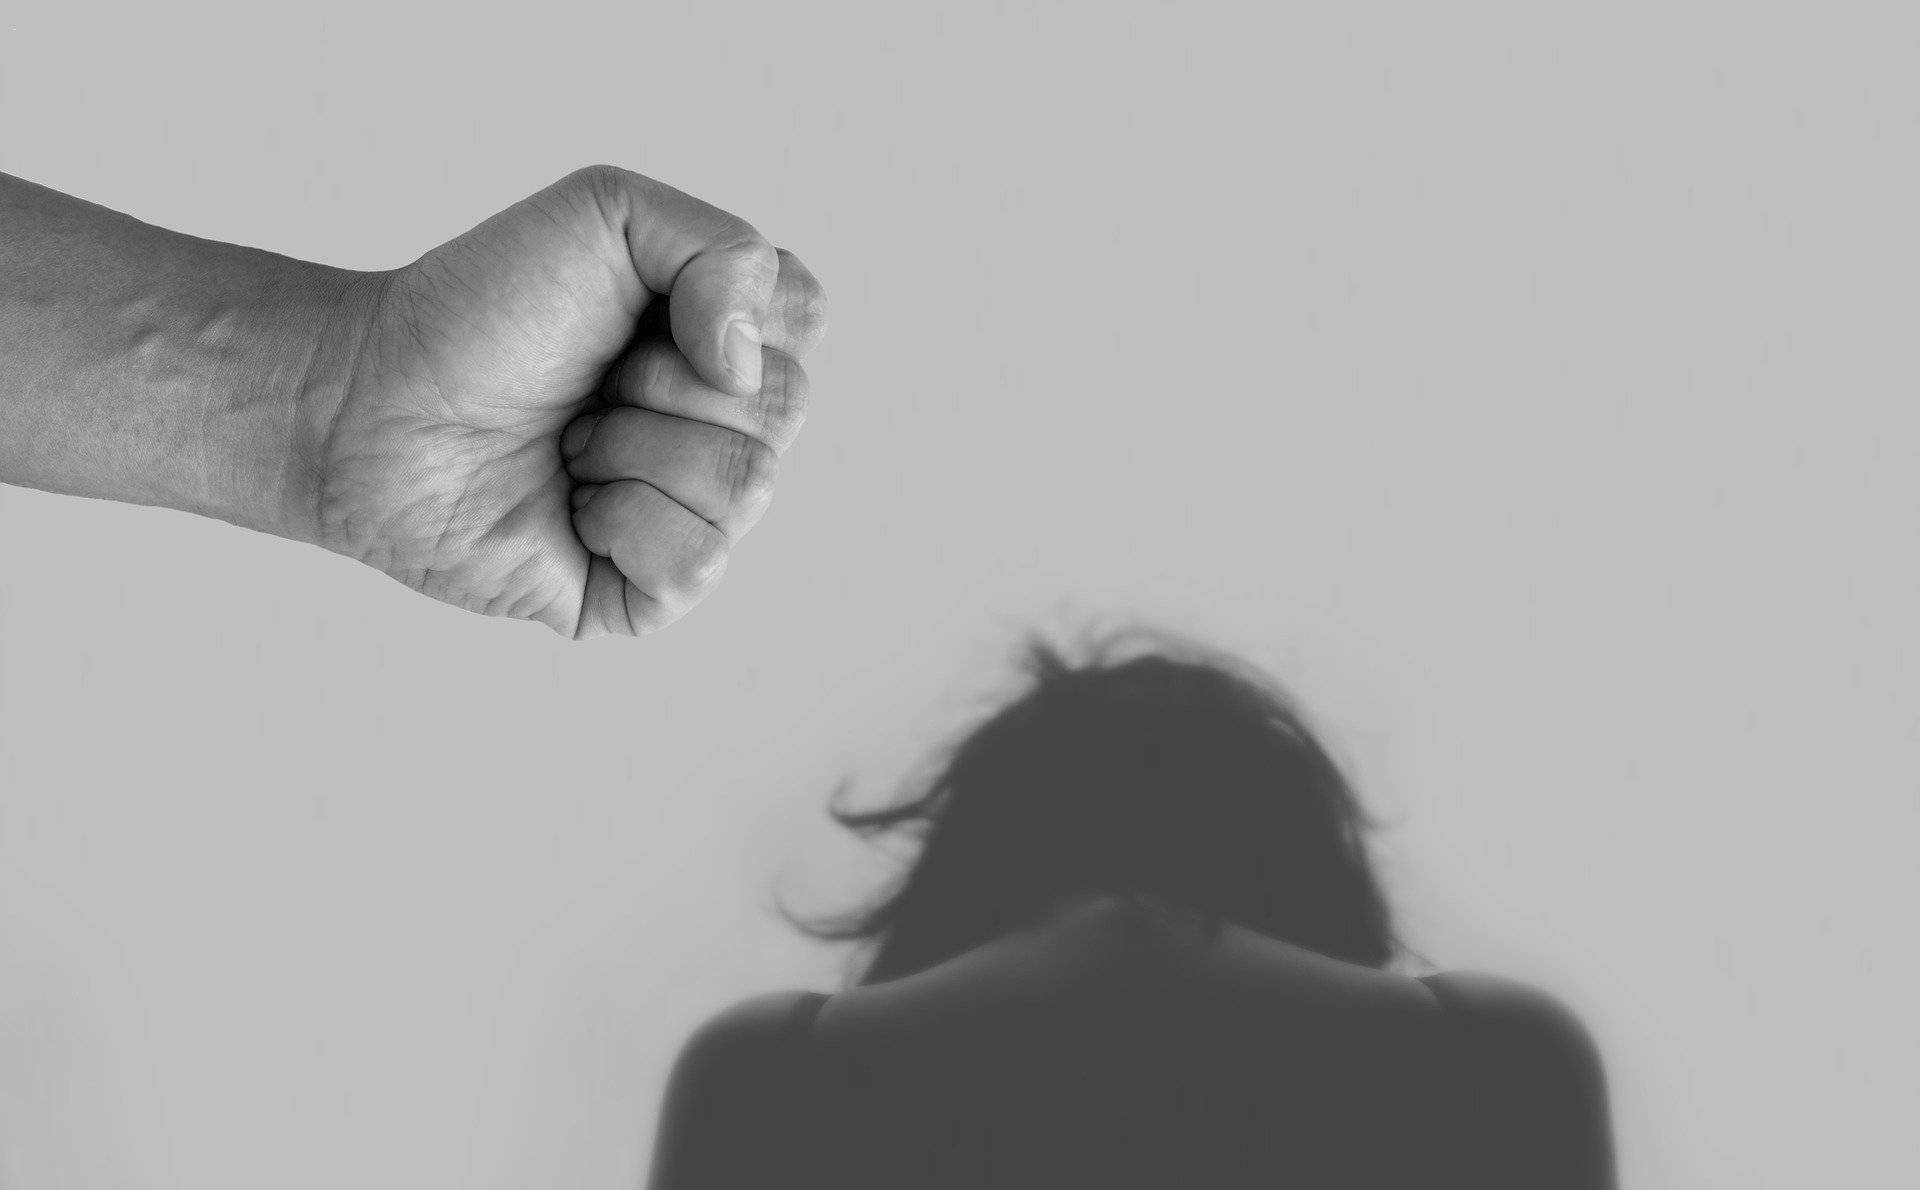 Erfahrene Beraterinnen der Interventionsstelle gegen häusliche Gewalt unterstützen: Beratung nach häuslicher Gewalt